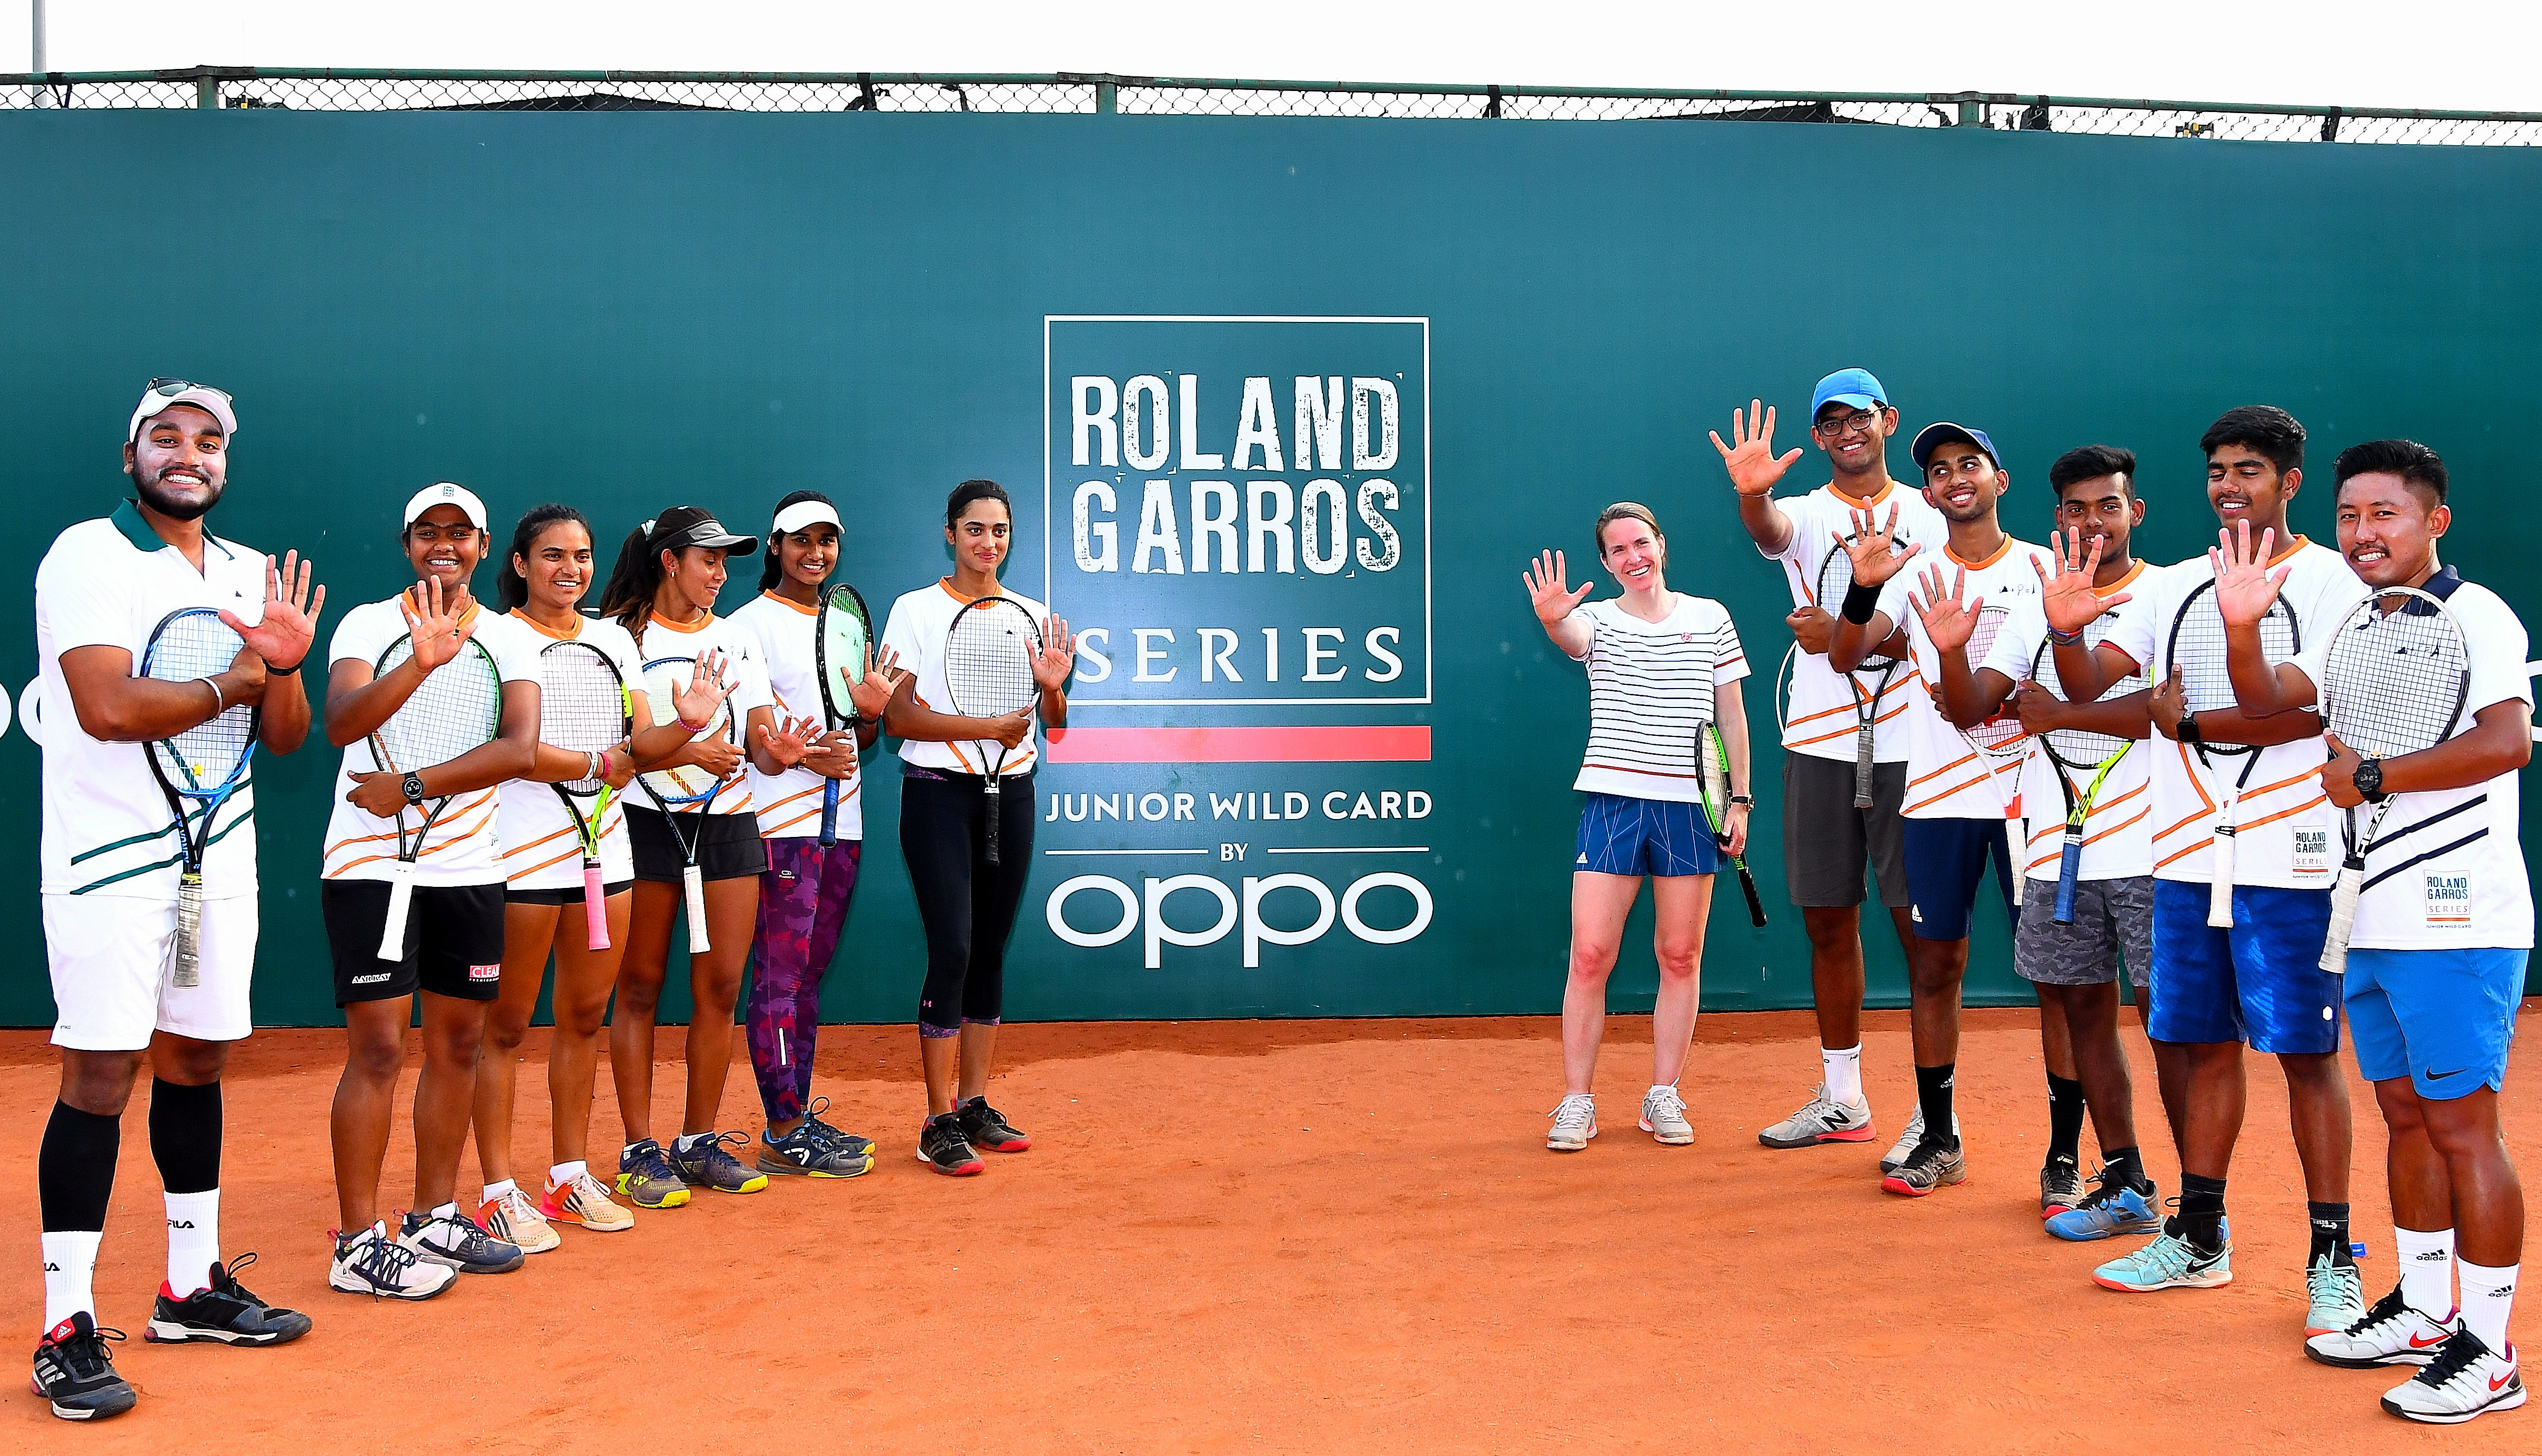 Roland-Garros Junior Wild Card Series by Oppo last slots decided! - Roland- Garros